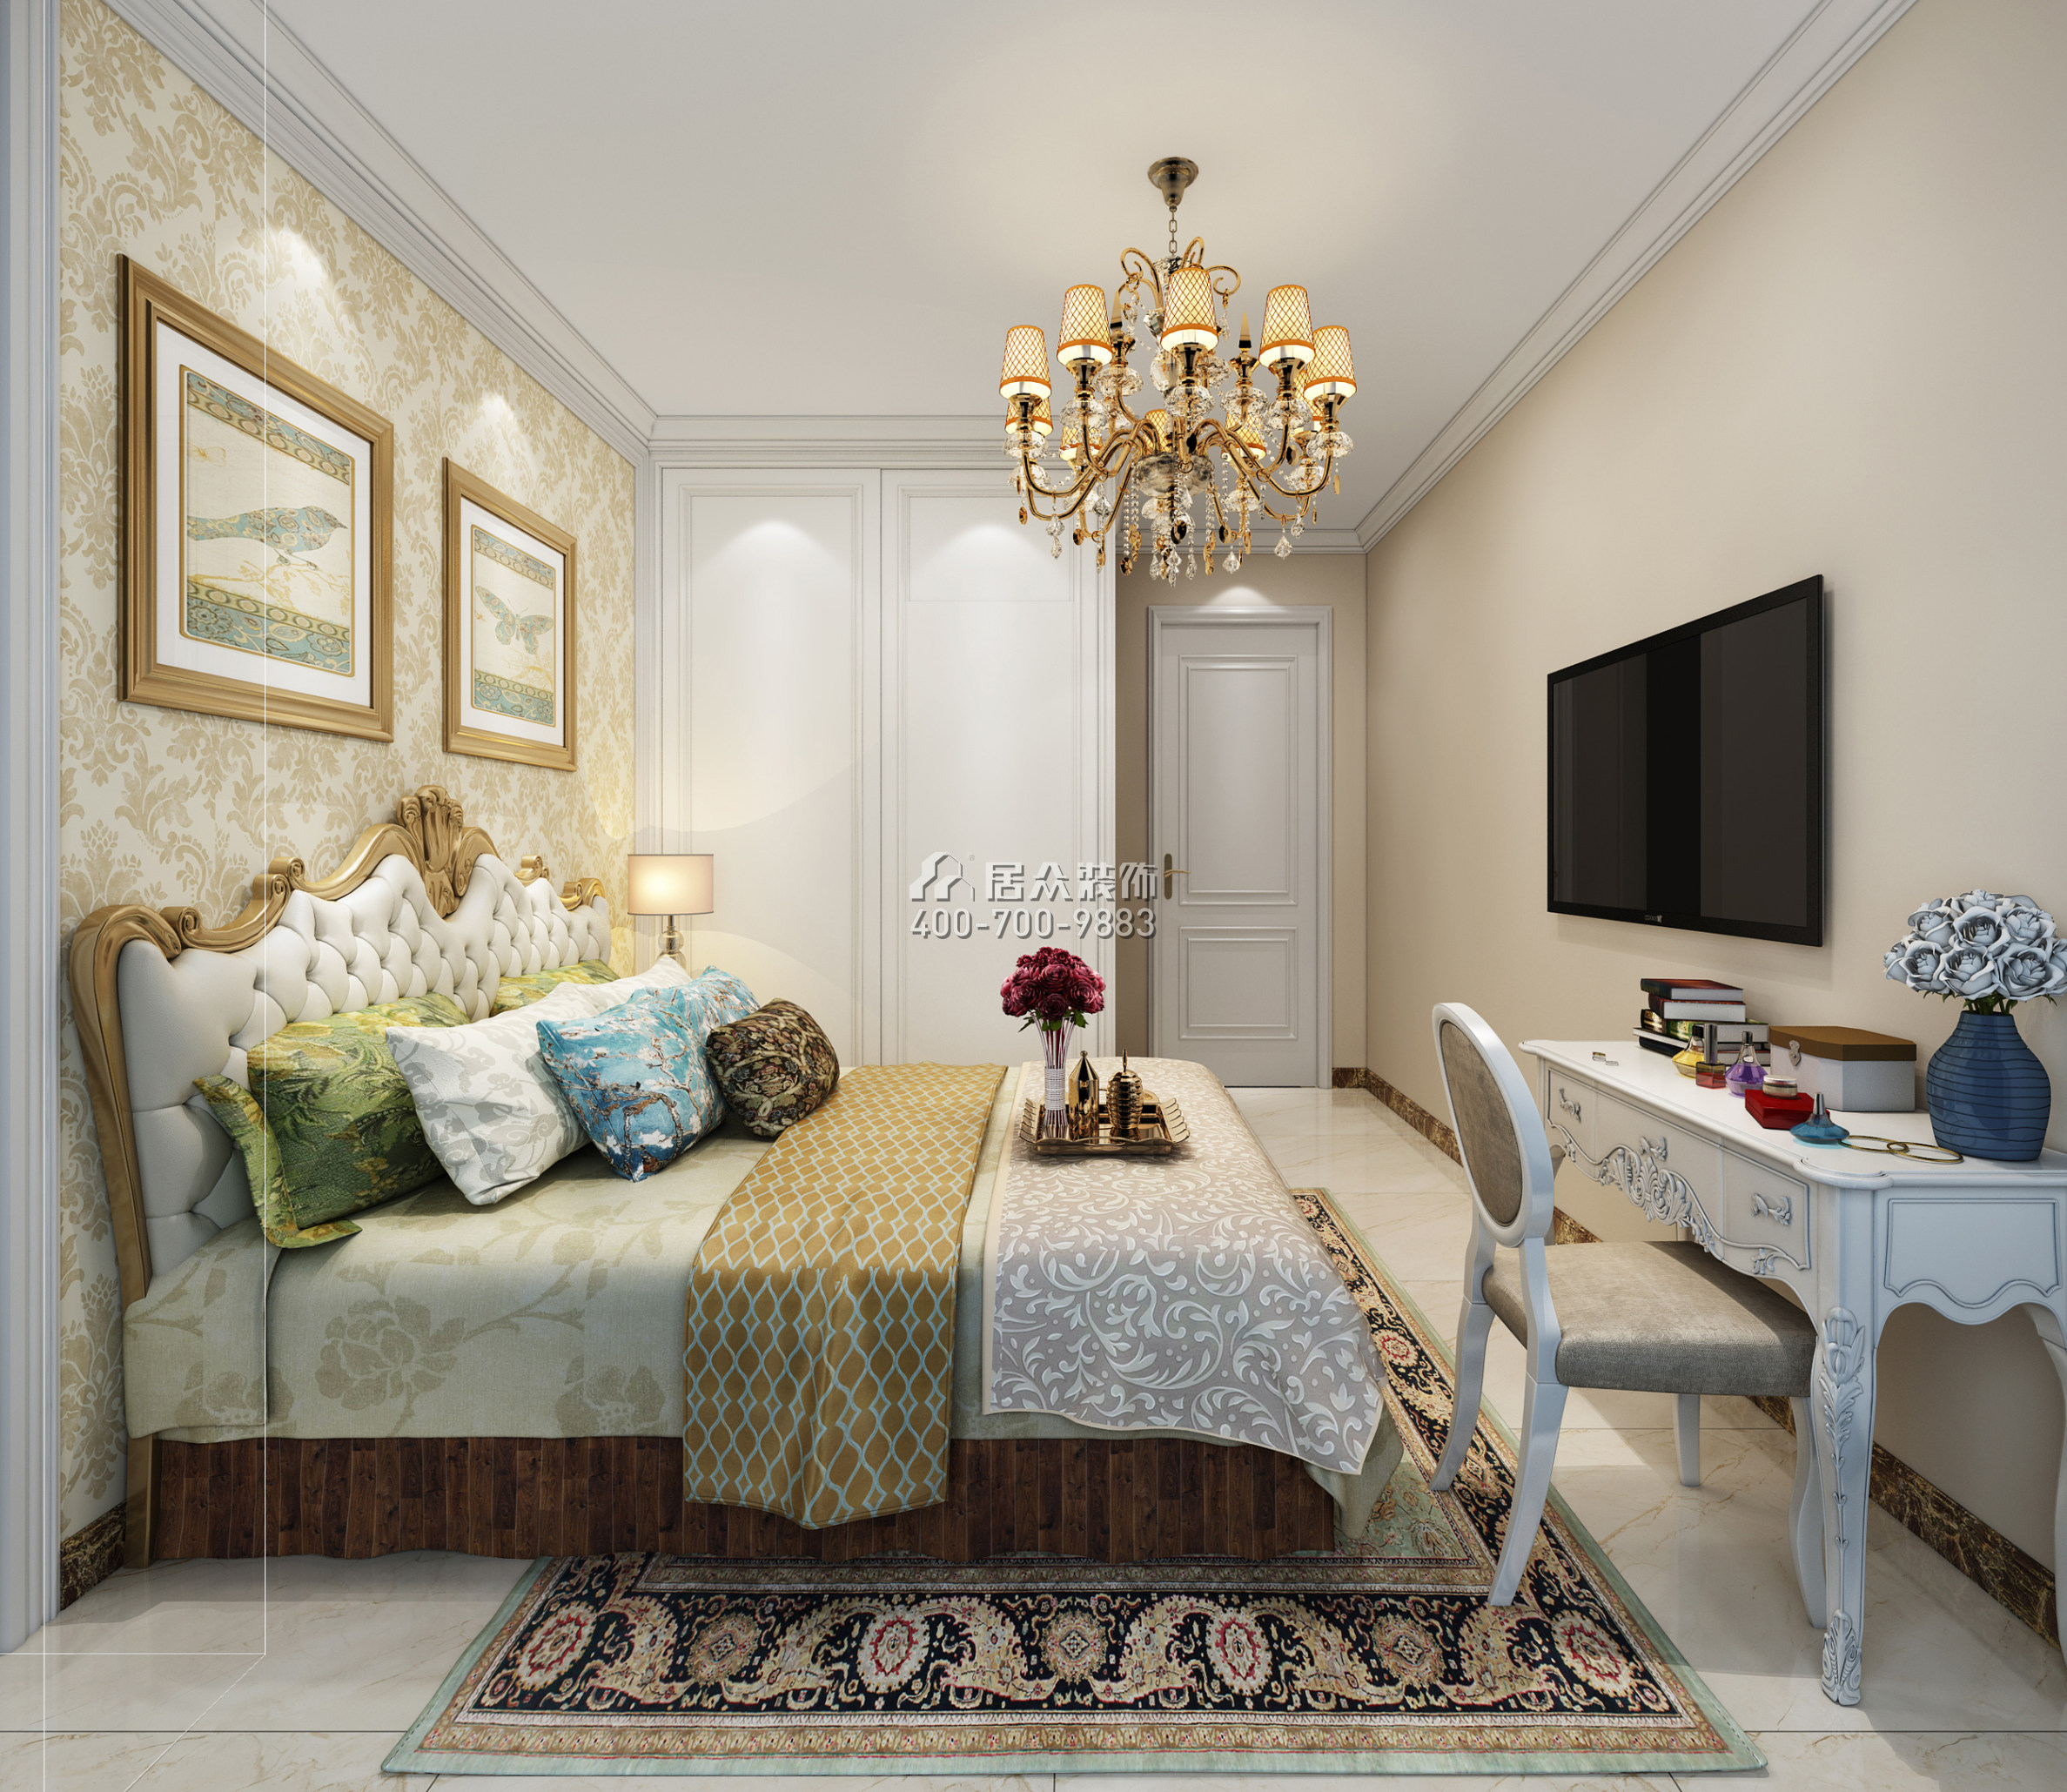 星河银湖谷98平方米美式风格平层户型卧室装修效果图